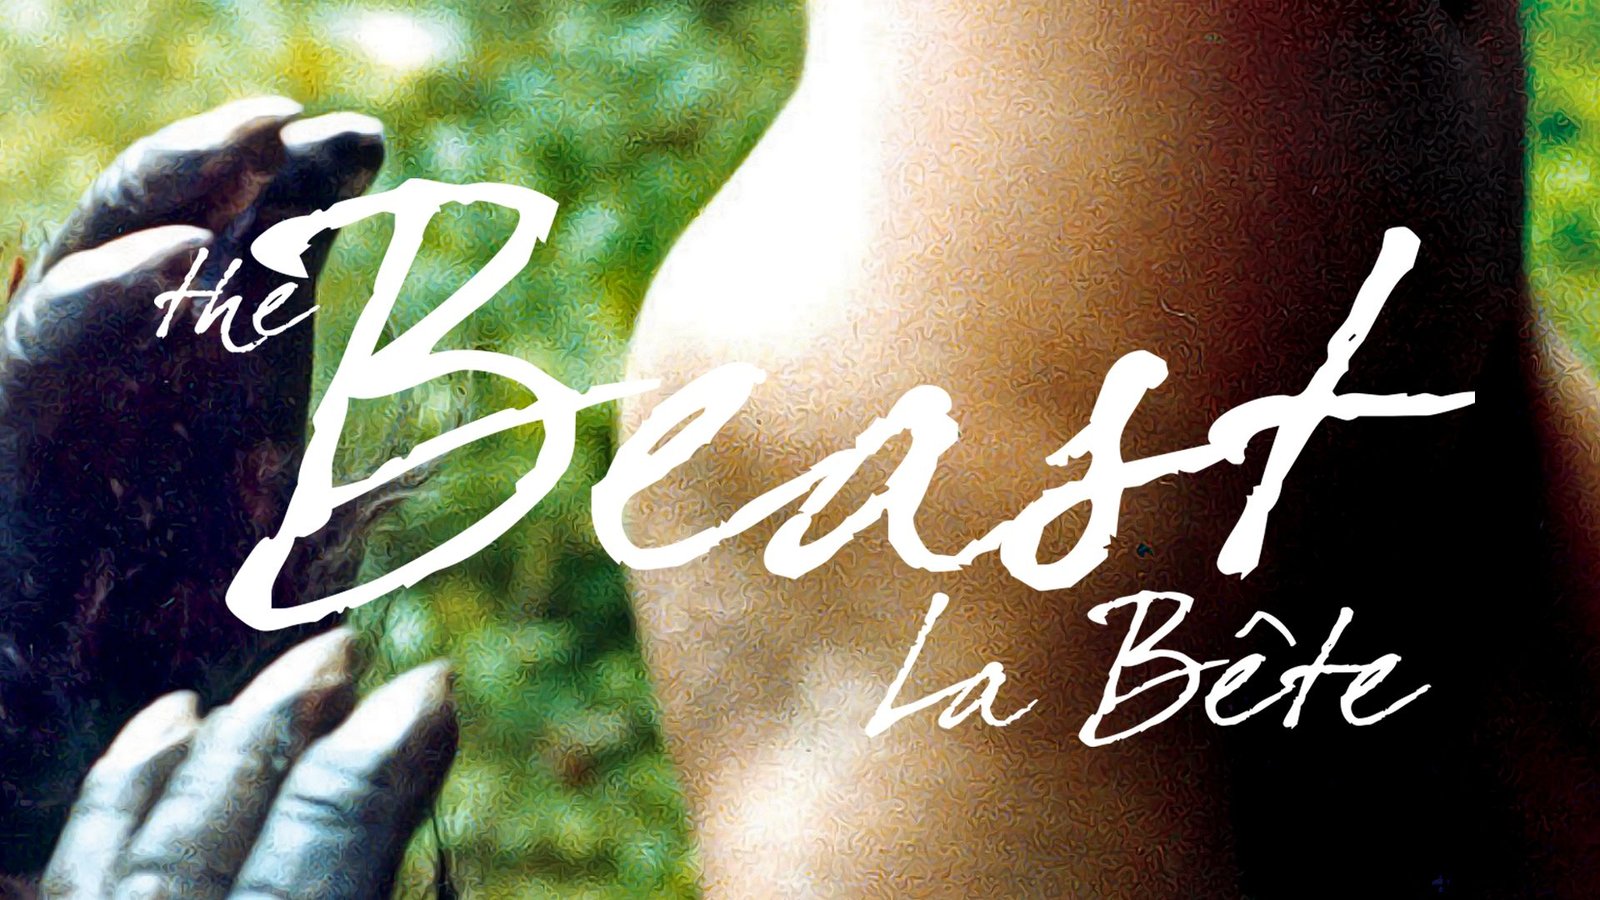 The Beast - La Bete